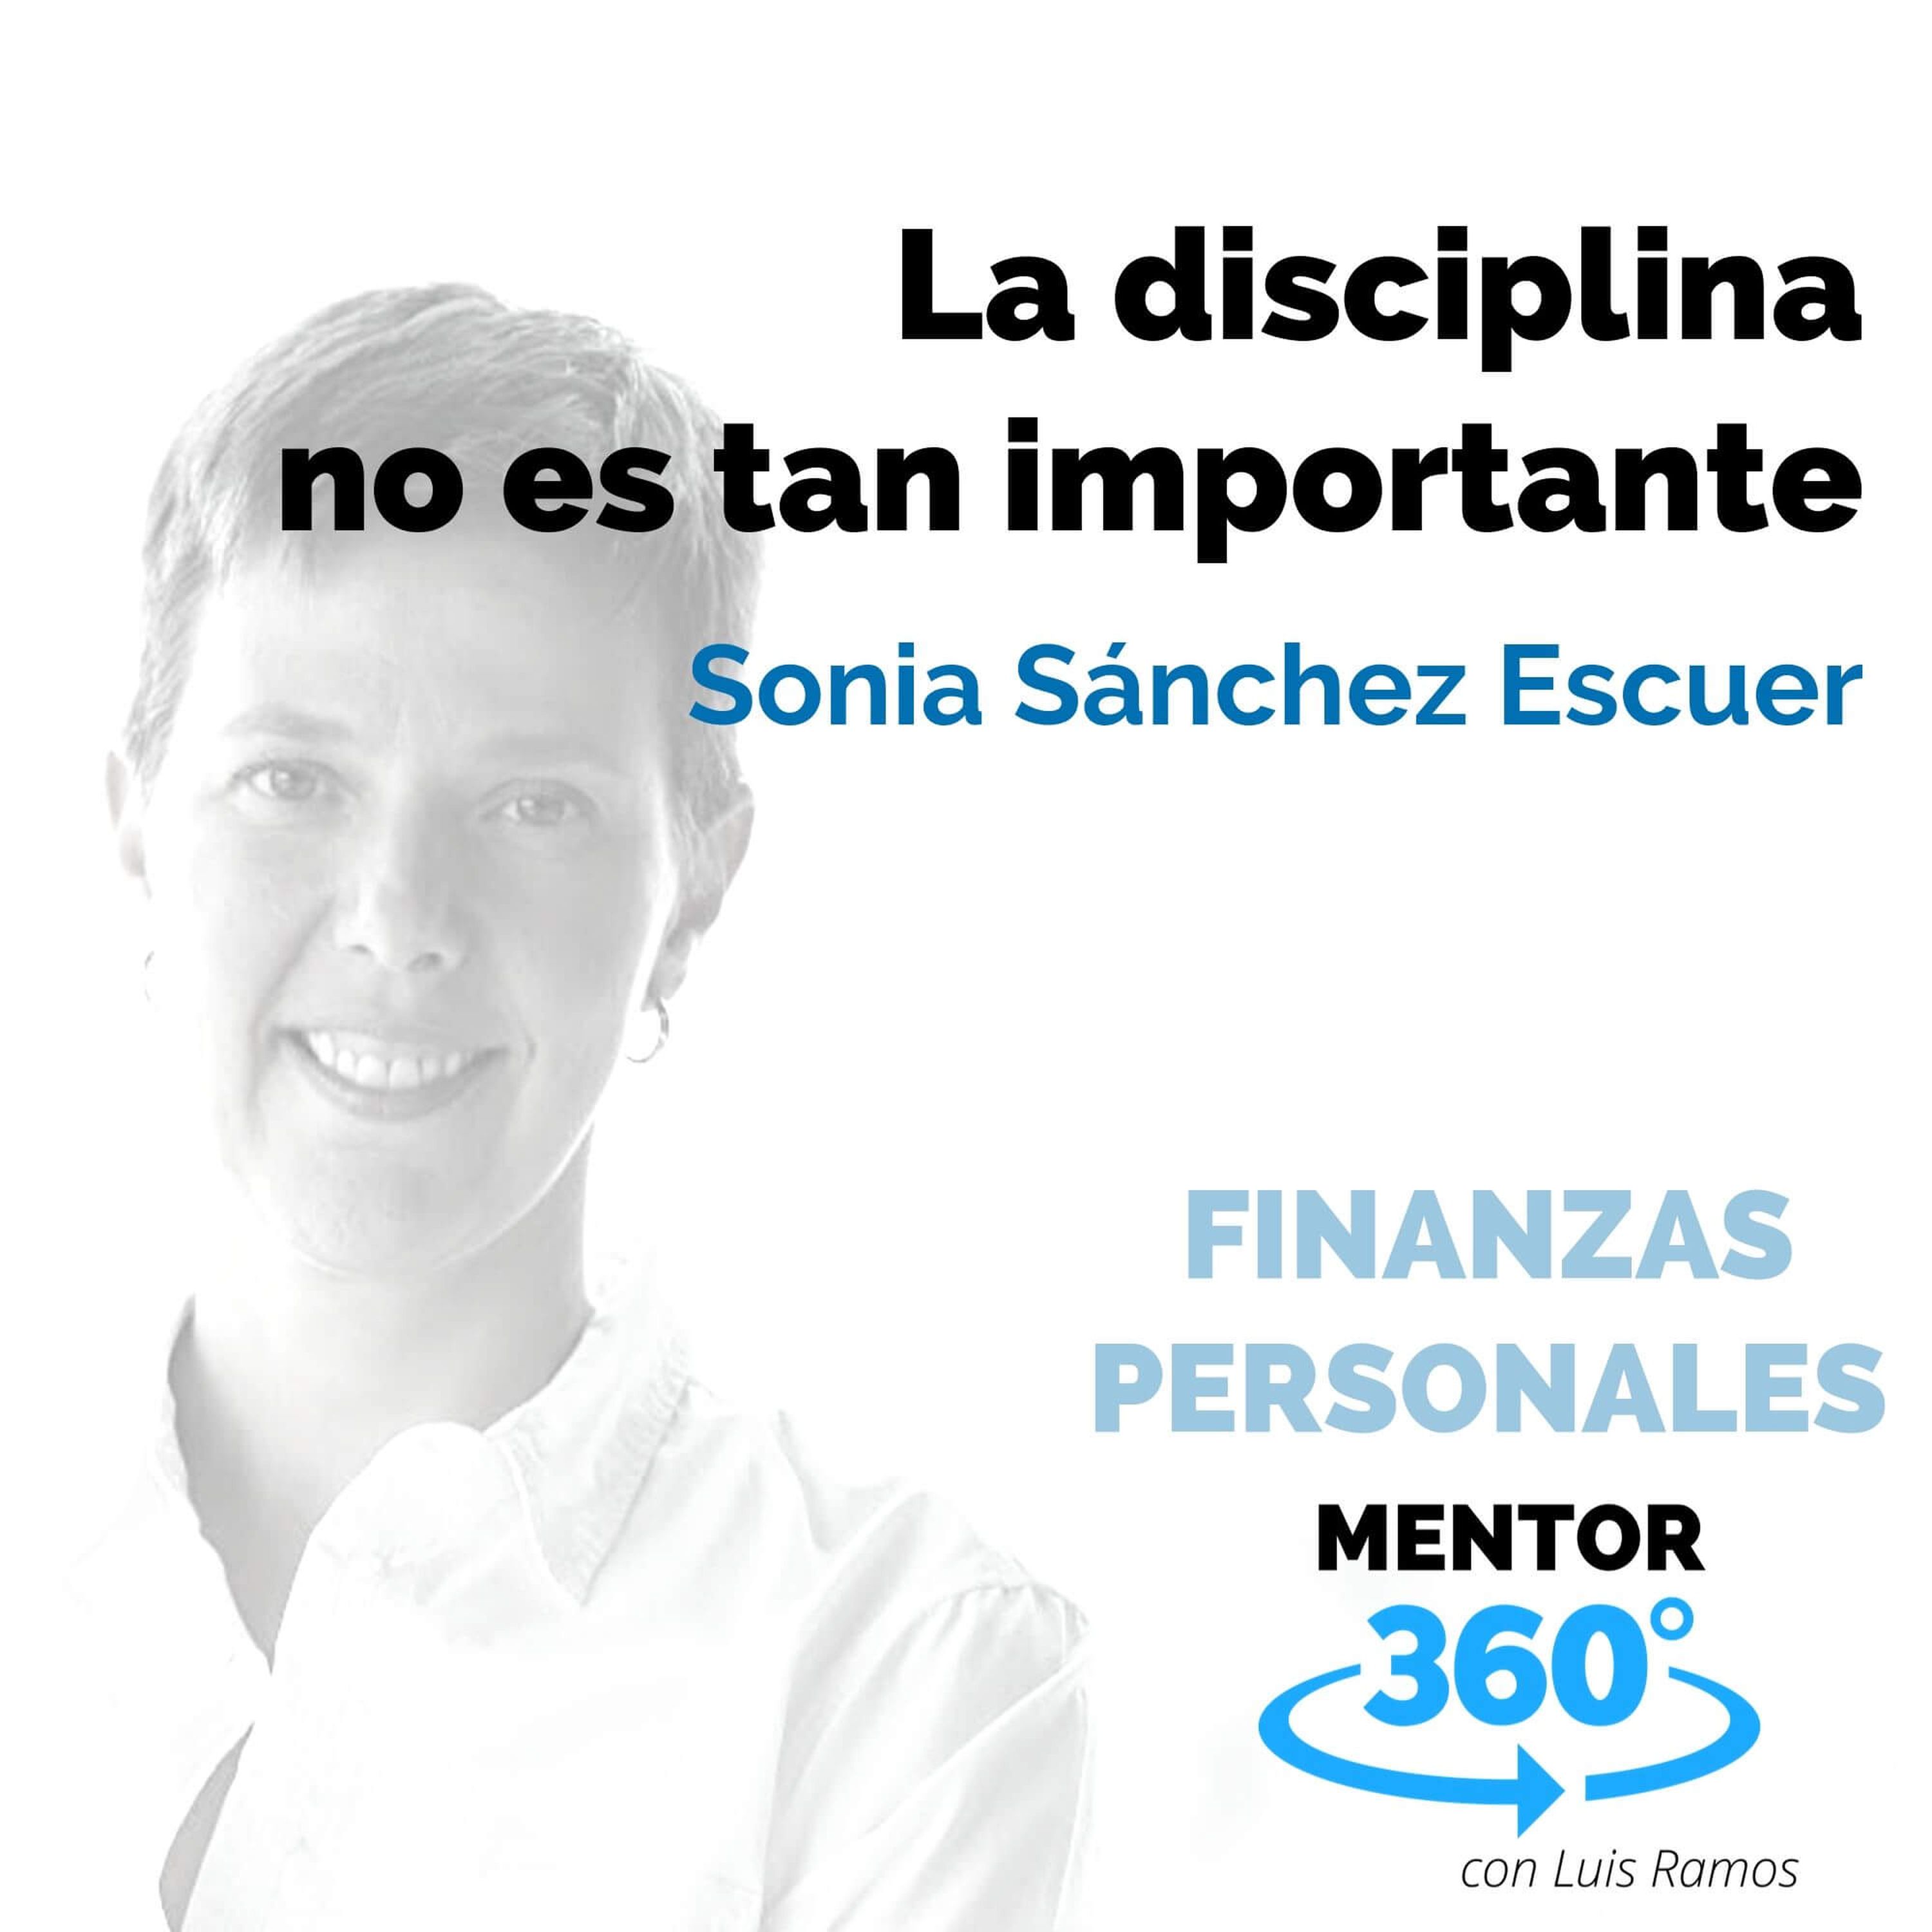 La disciplina no es tan importante, con Sonia Sánchez Escuer - FINANZAS PERSONALES